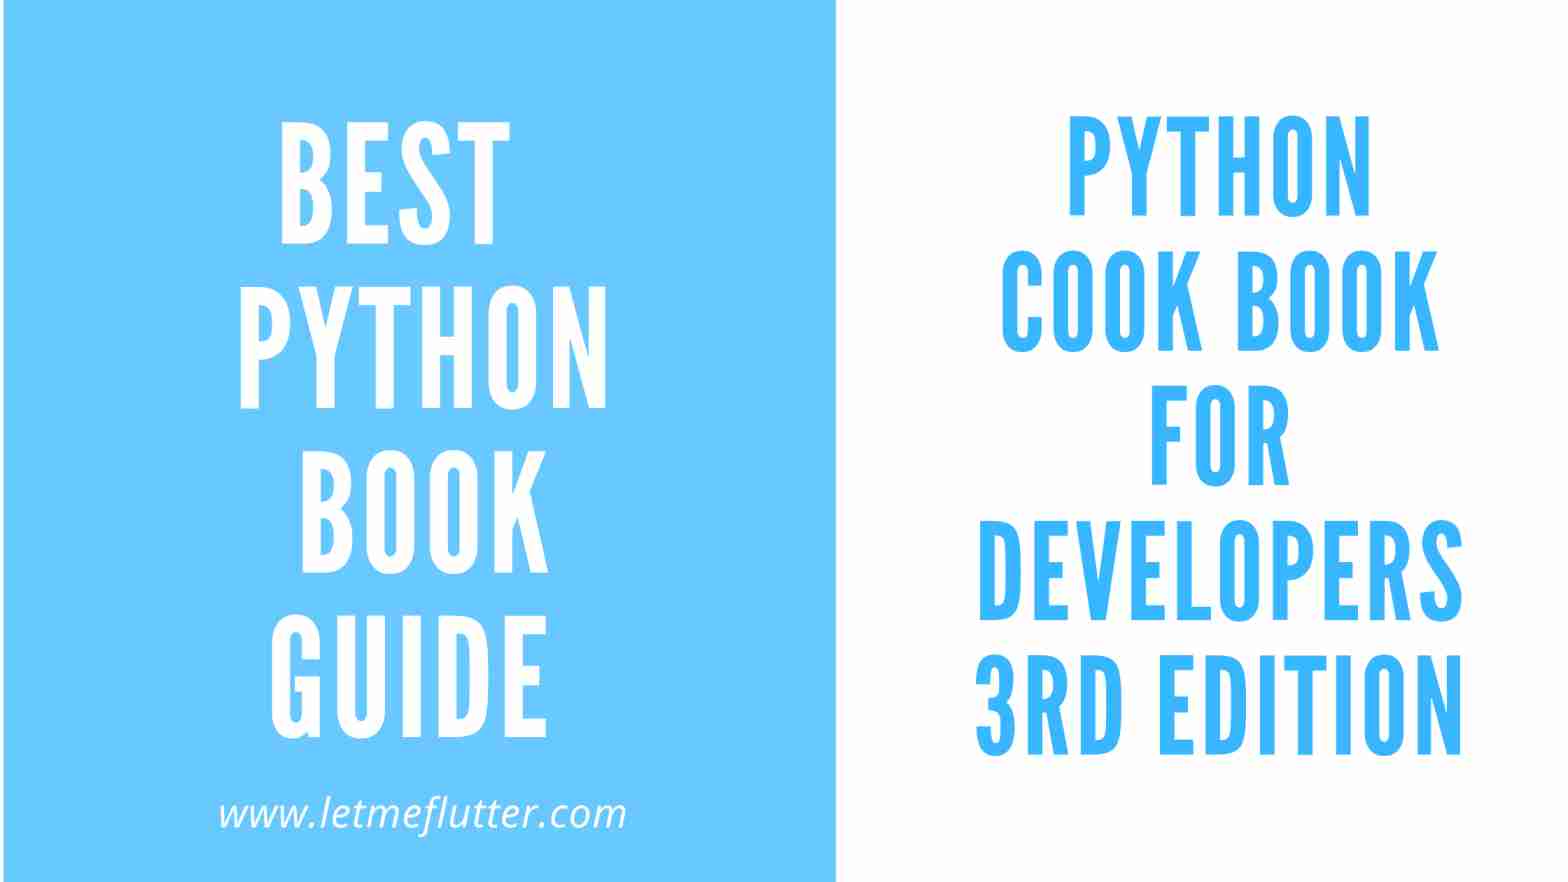 python book guide